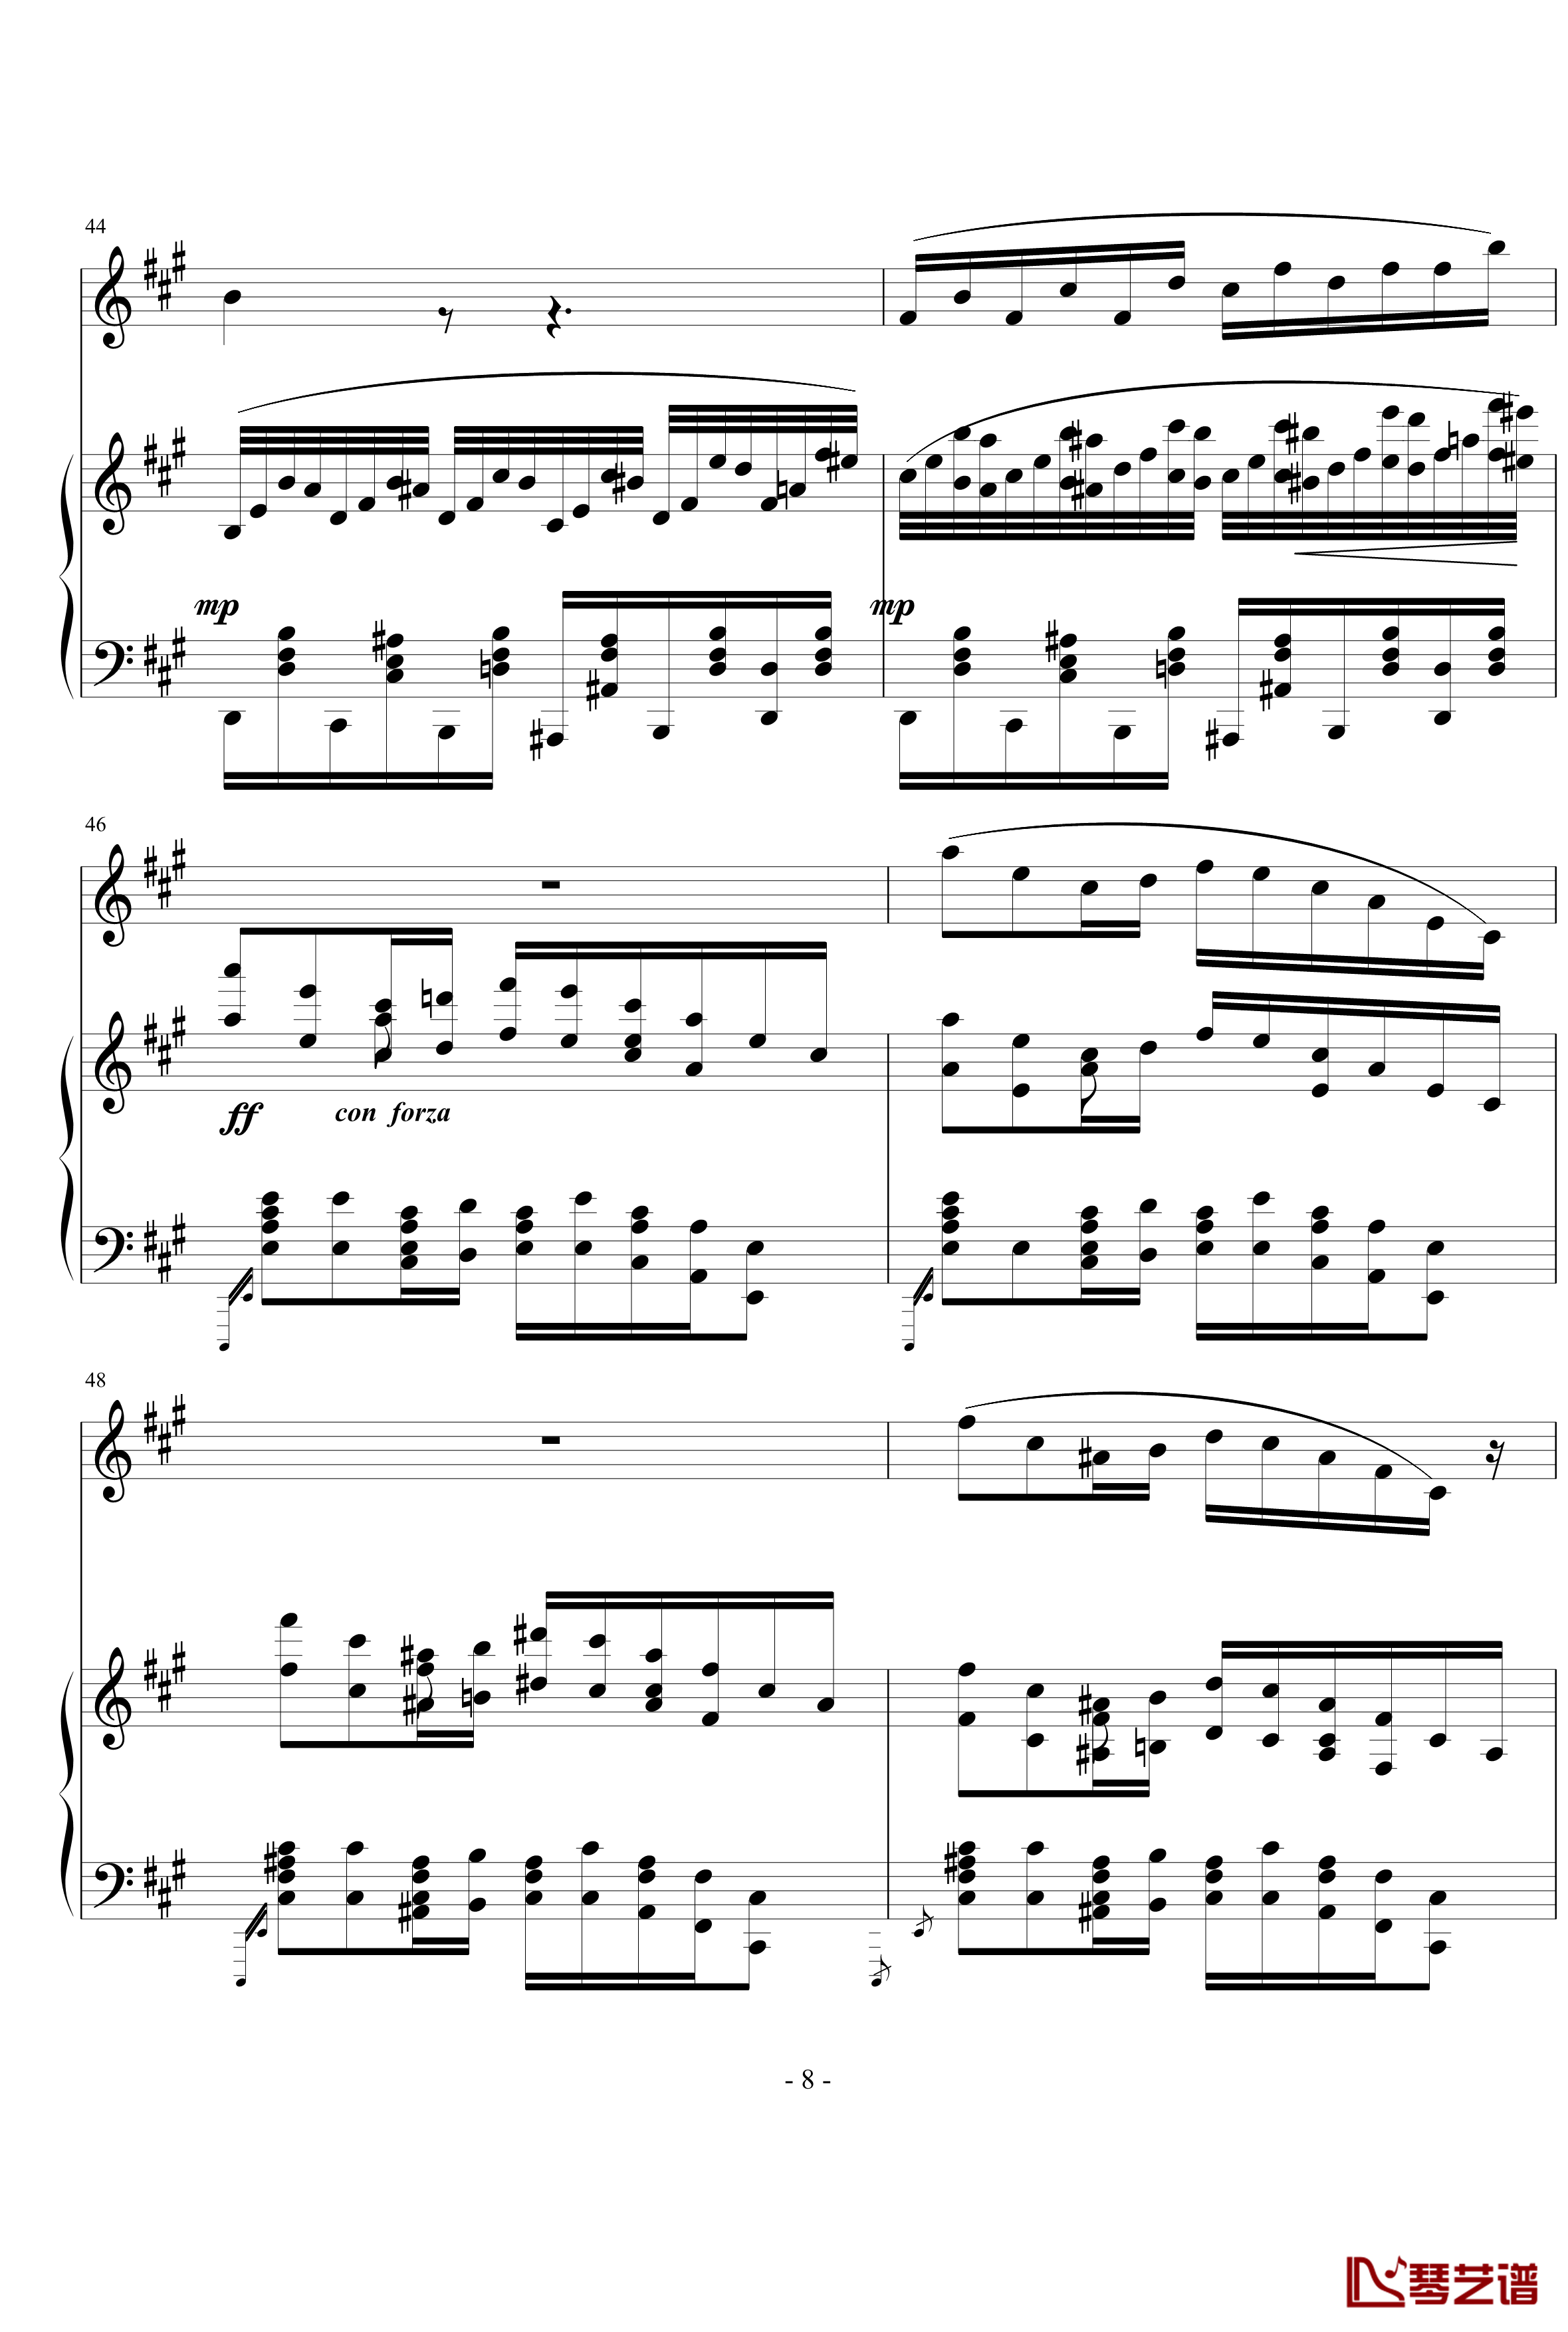 钢琴单簧管小奏鸣曲钢琴谱-nyride8